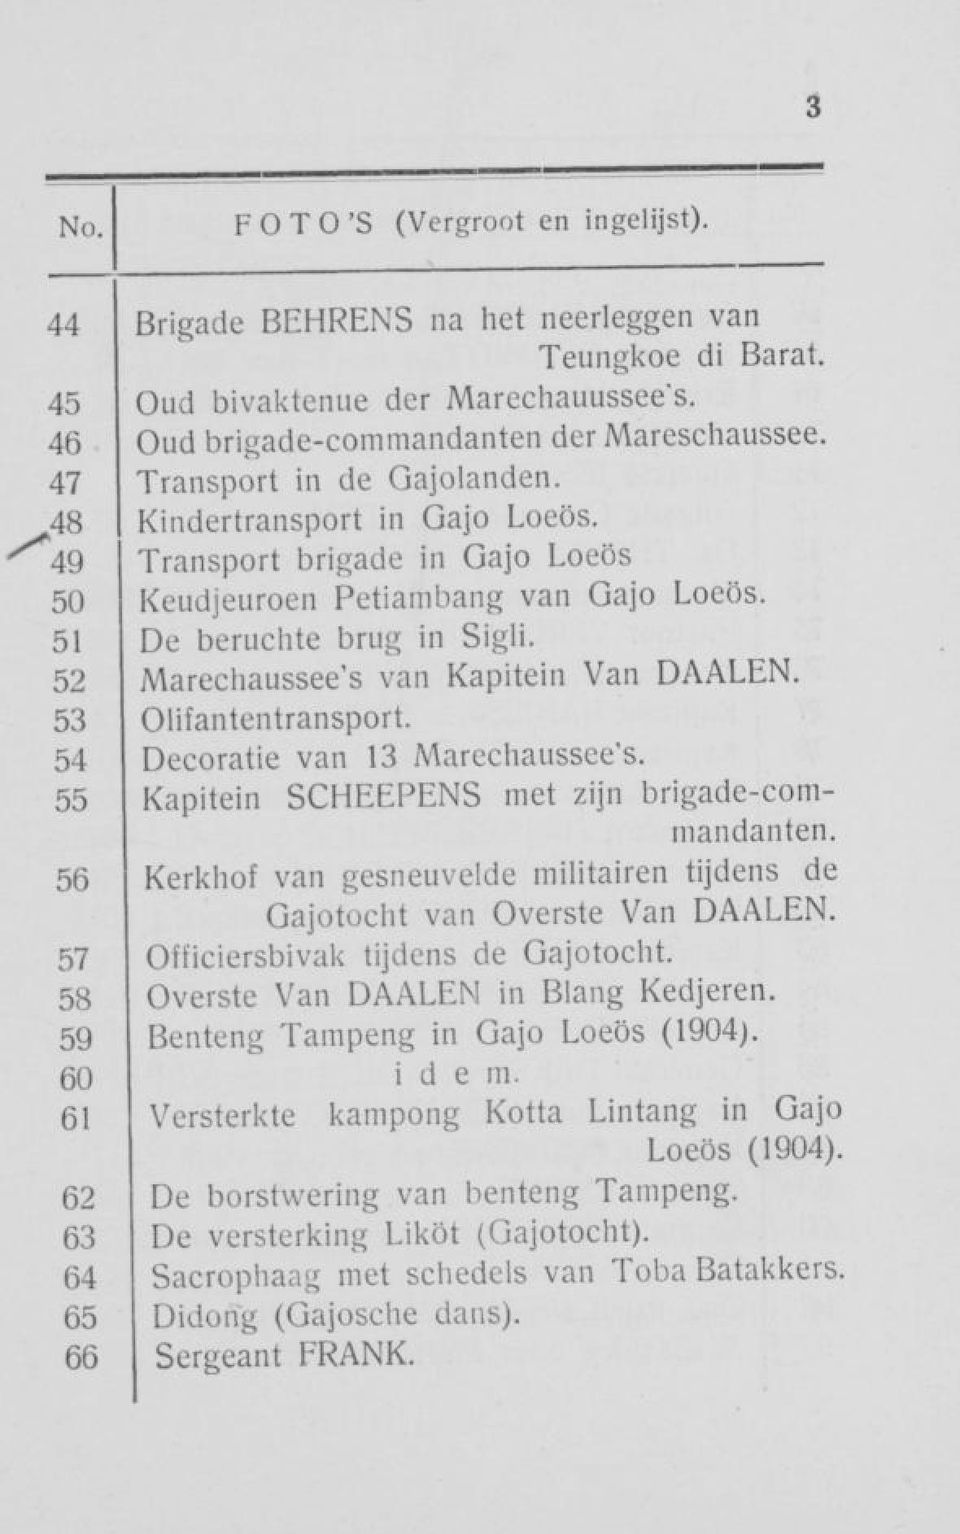 52 Marechaussee's van Kapitein Van DAALEN. 53 Olifantentransport. 54 Decoratie van 13 Marechaussee's. 55 Kapitein SCHEEPENS met zijn brigade-commandanten.